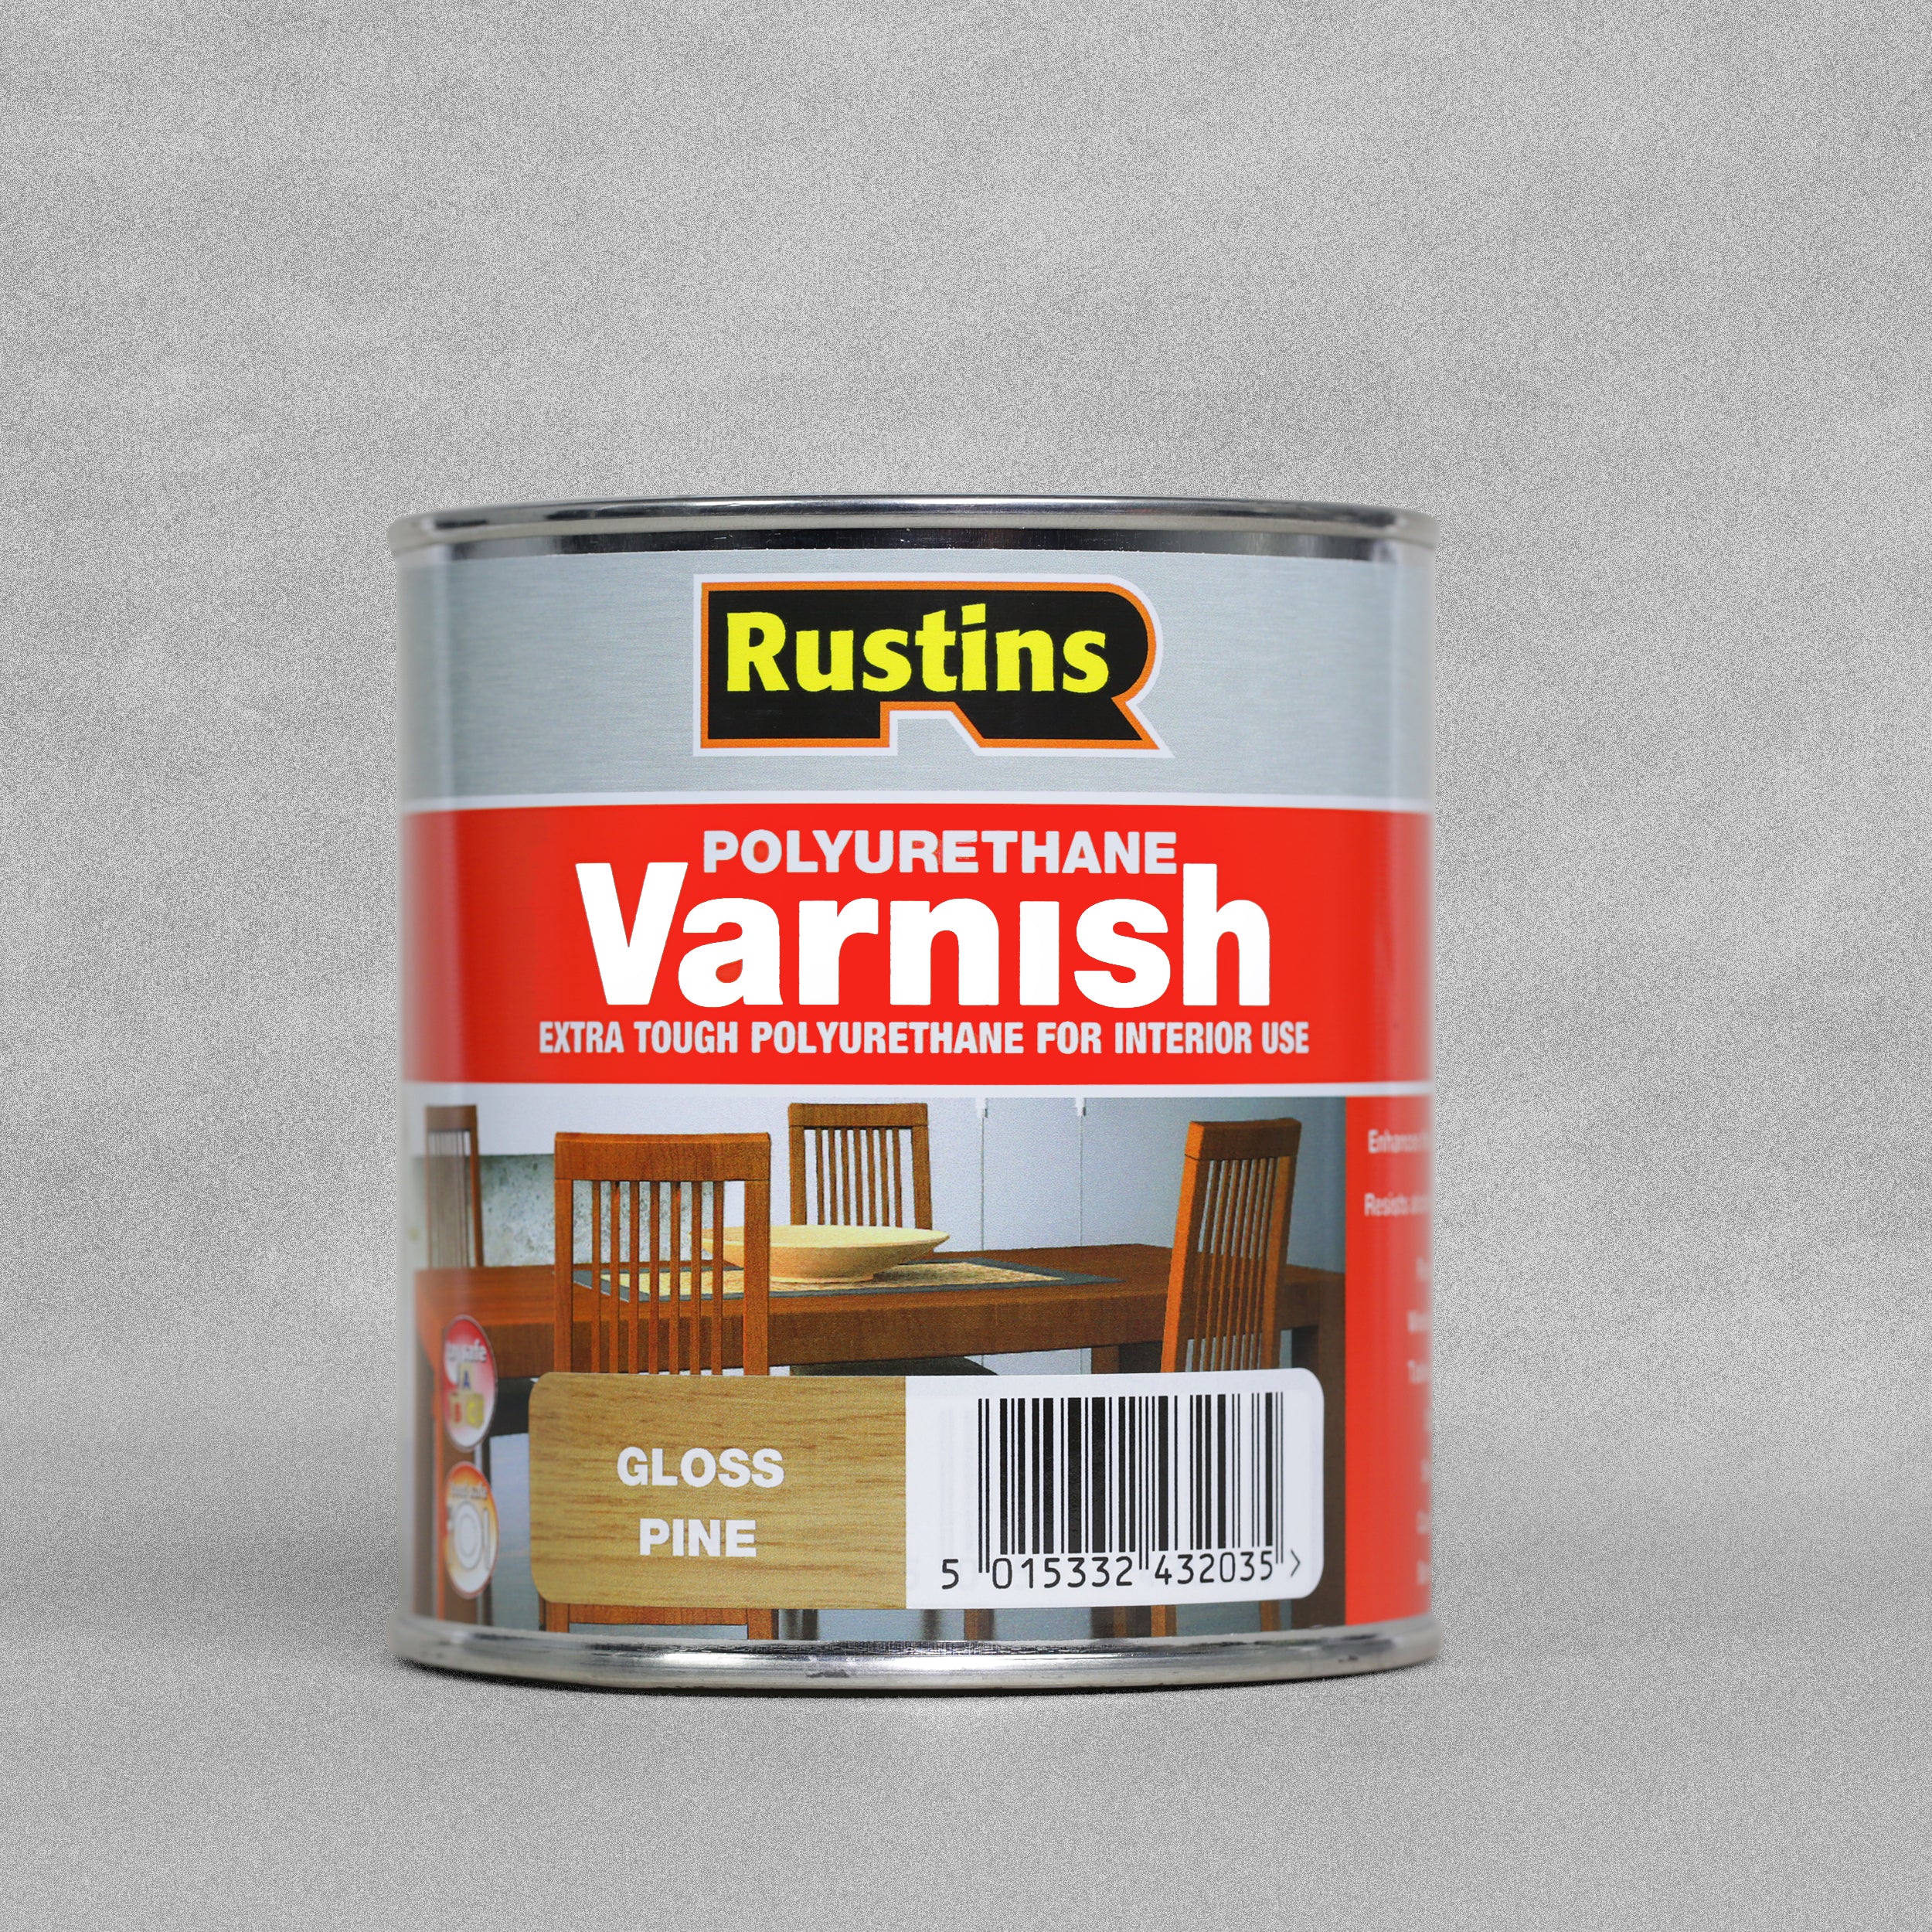 Rustins Poly Varnish - Gloss Pine